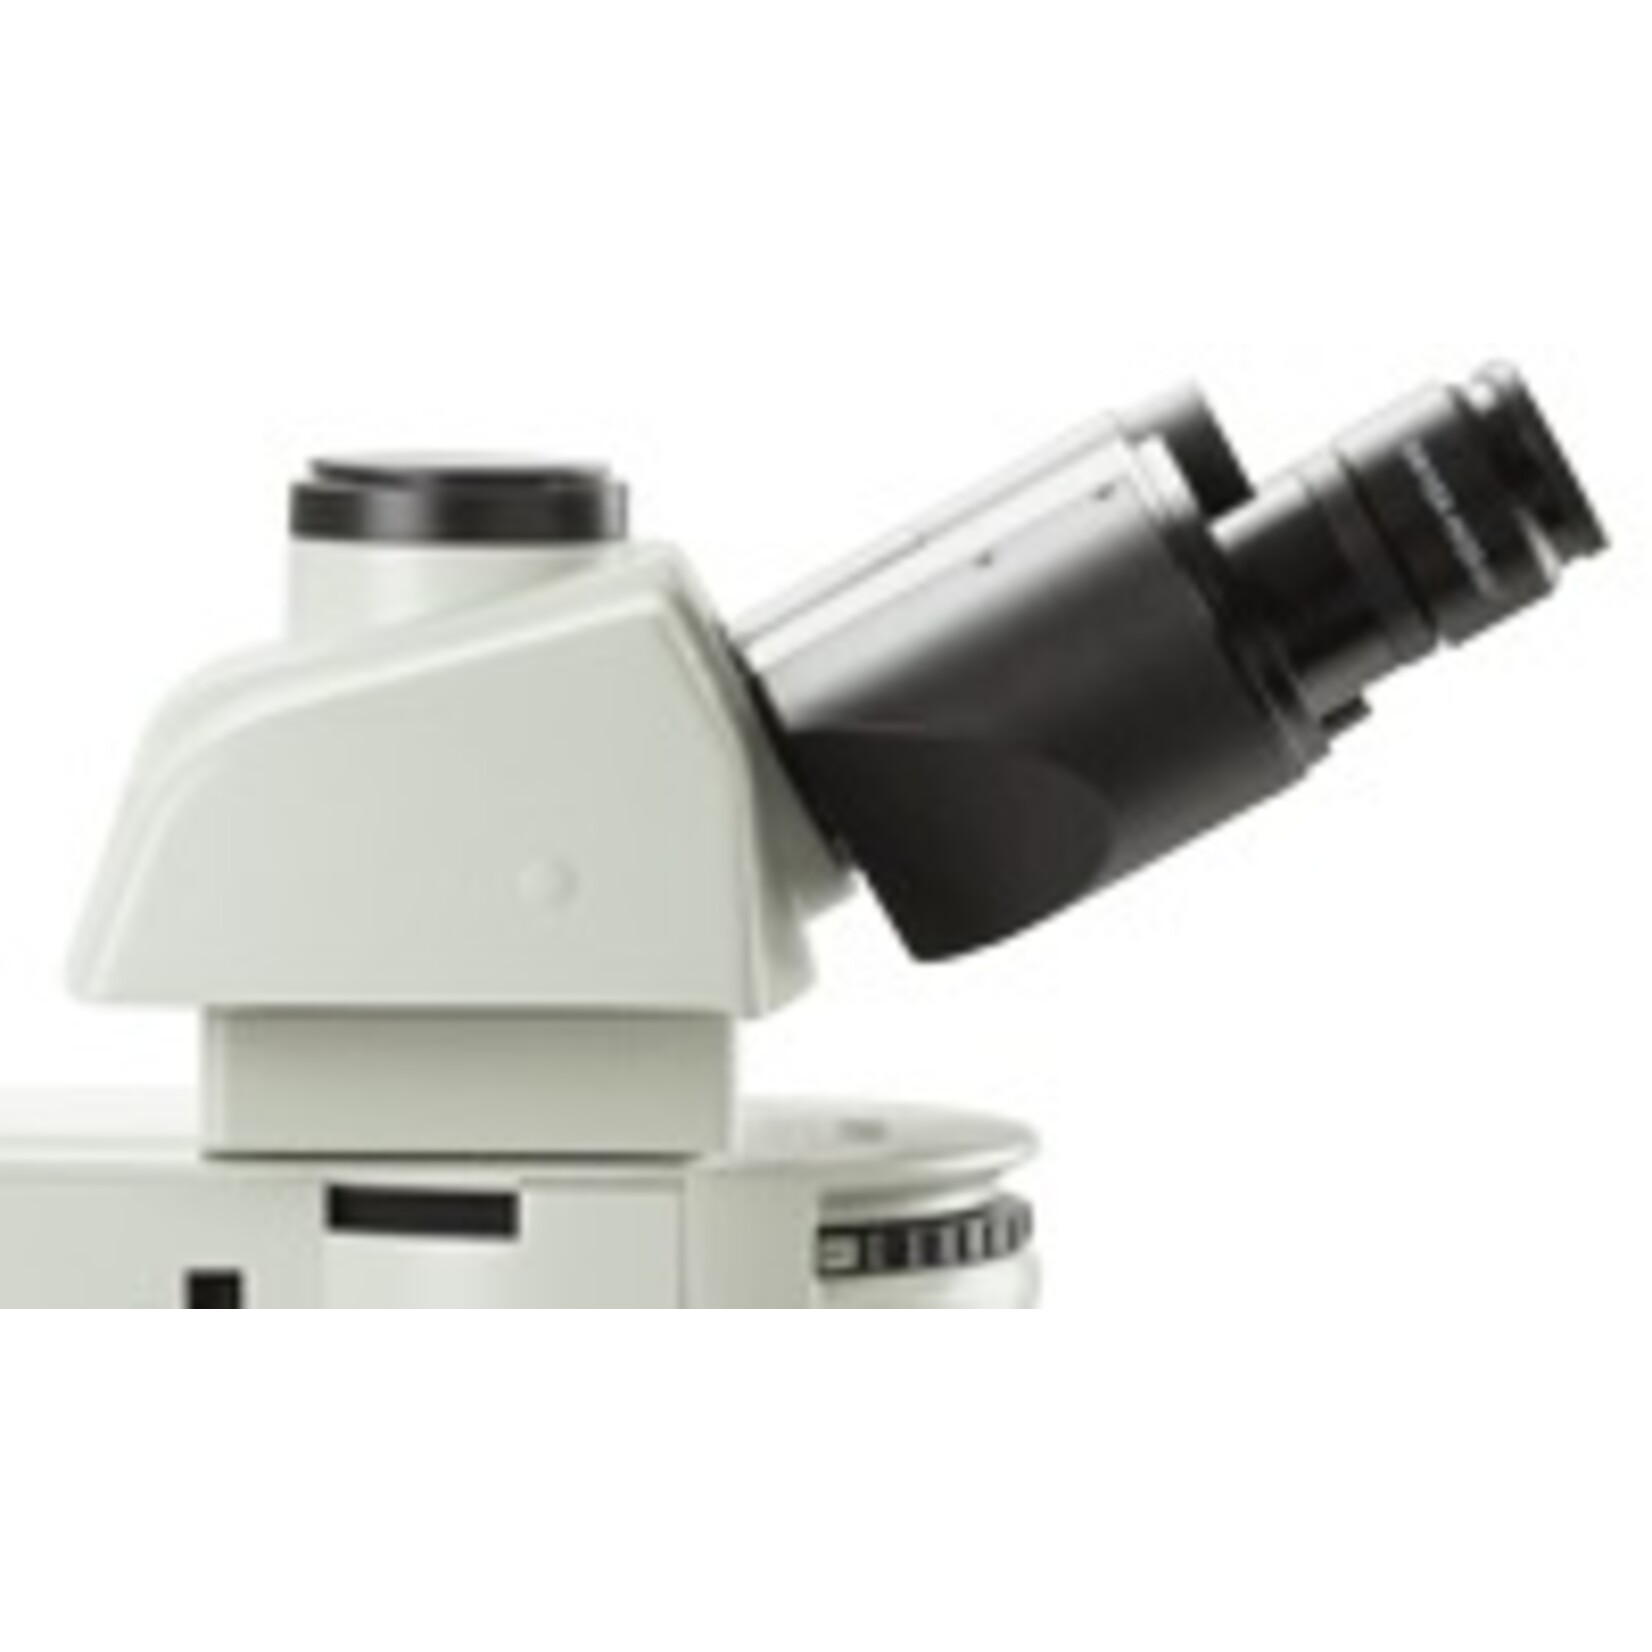 Microscópio Delphi para ensaios de materiais metalúrgicos